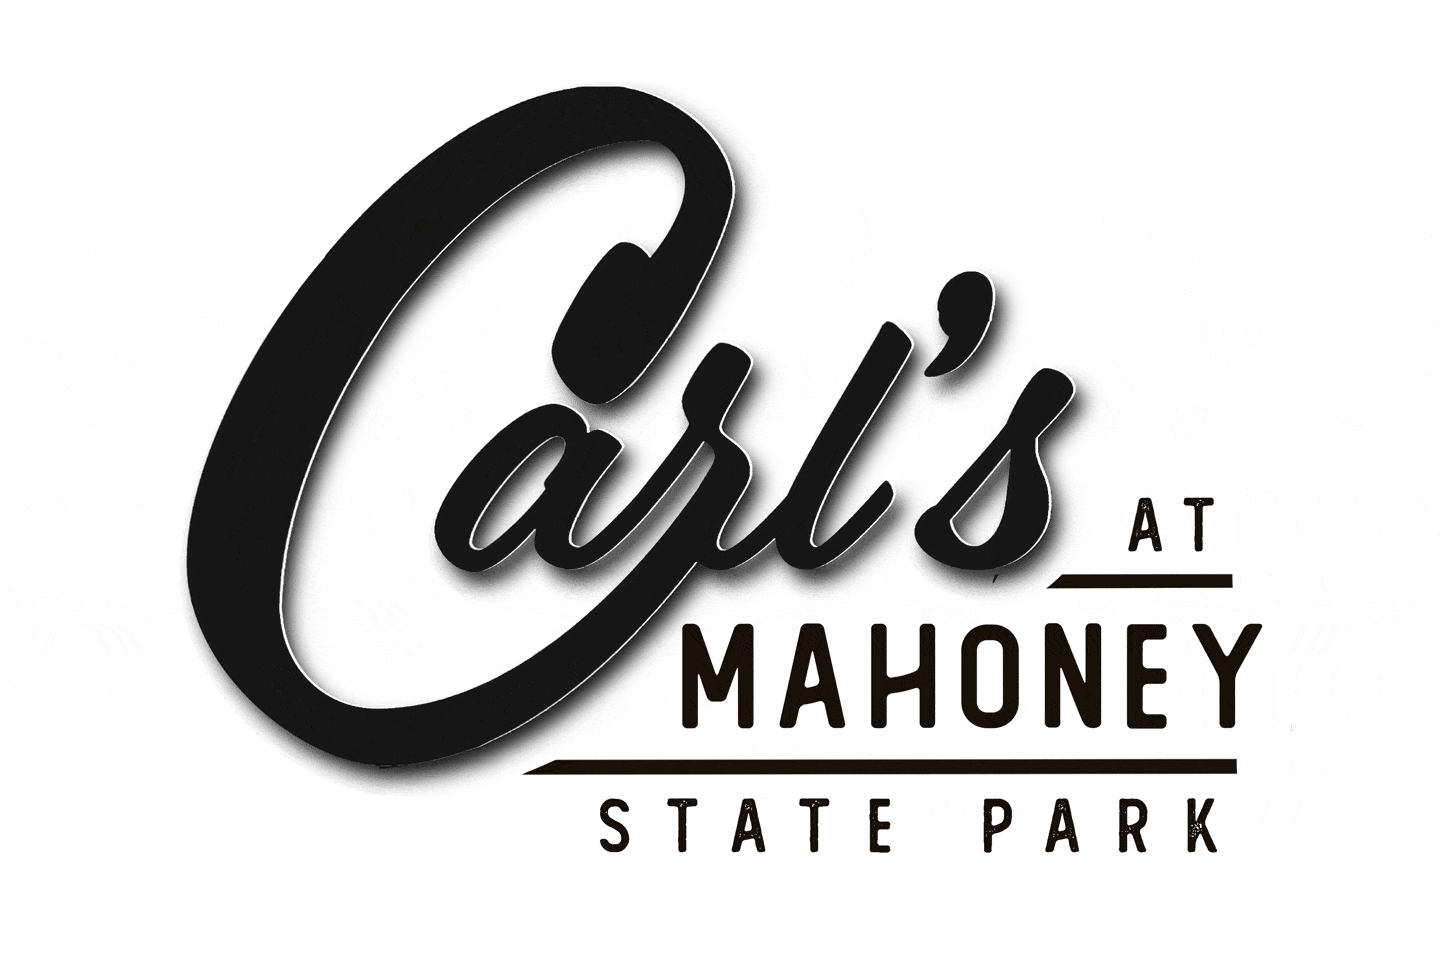 Carl’s at Mahoney brings food service back to park